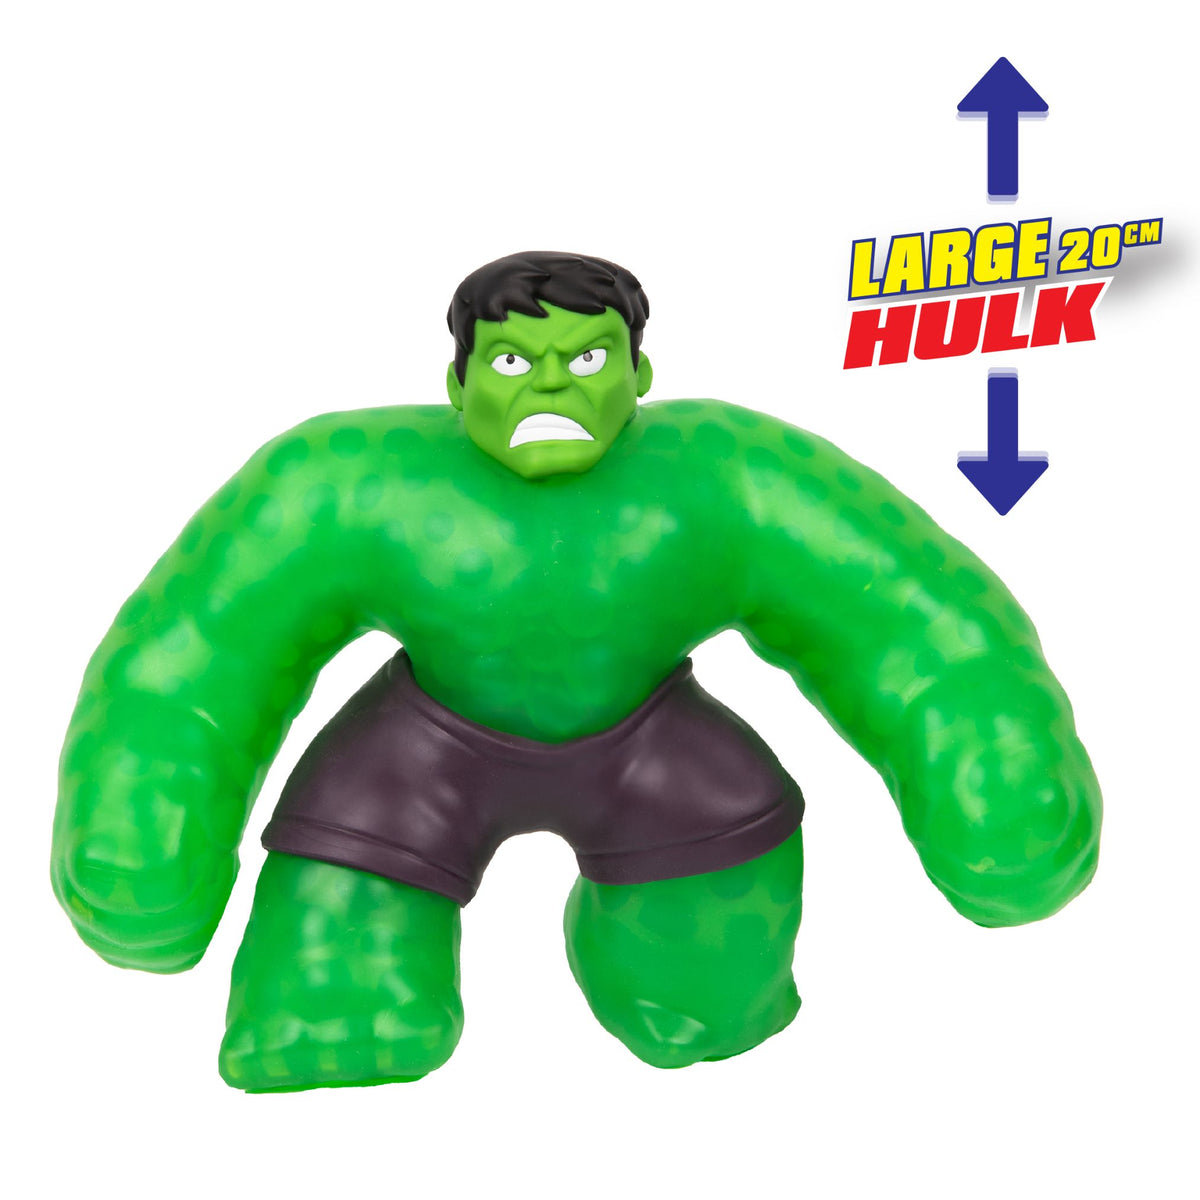 Marvel Incredible Hulk Large